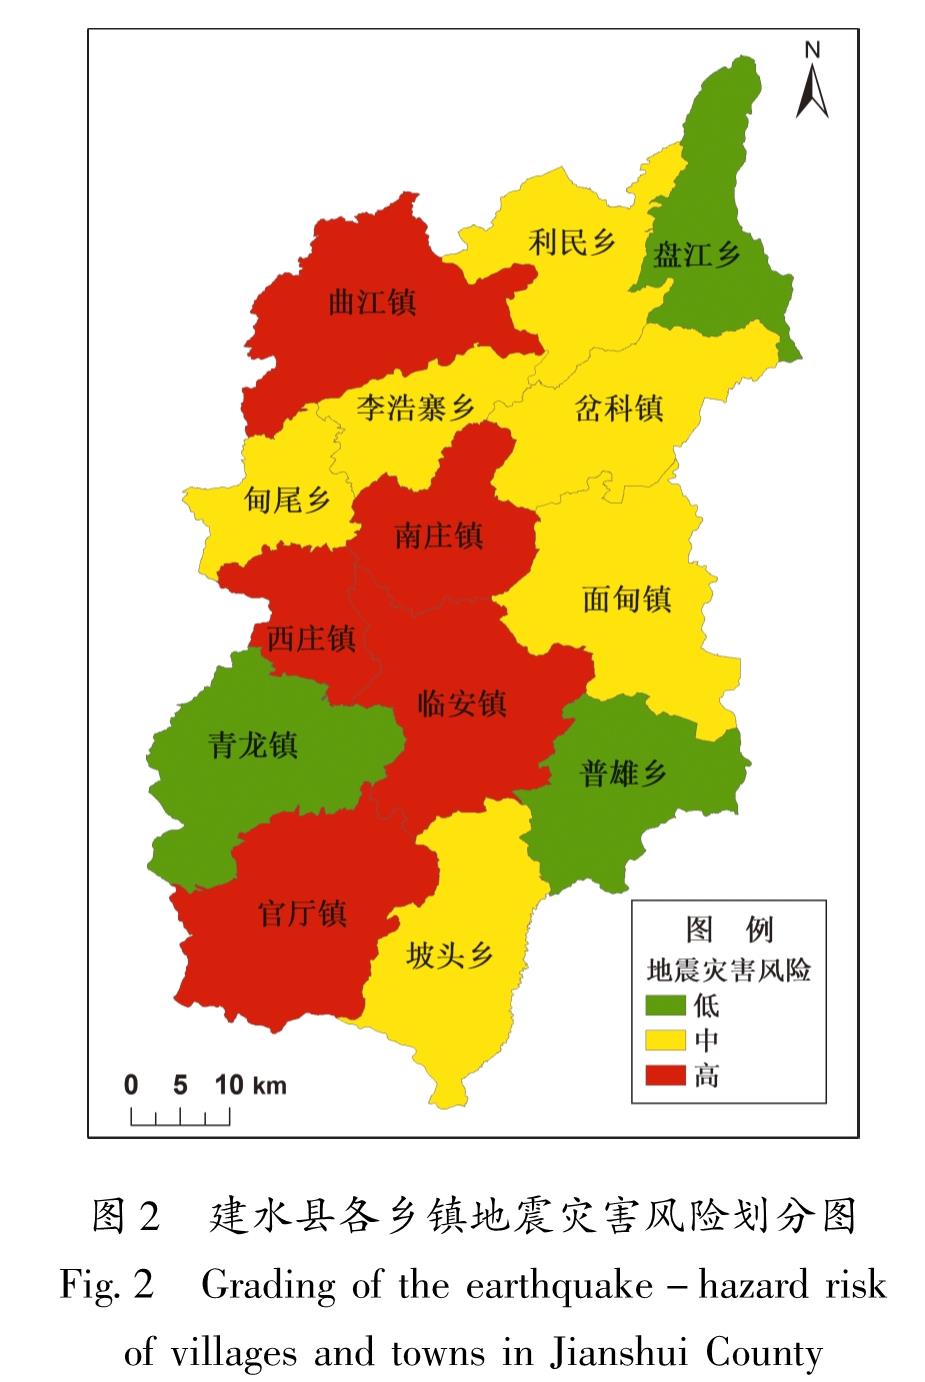 图2 建水县各乡镇地震灾害风险划分图<br/>Fig.2 Grading of the earthquake-hazard risk of villages and towns in Jianshui County